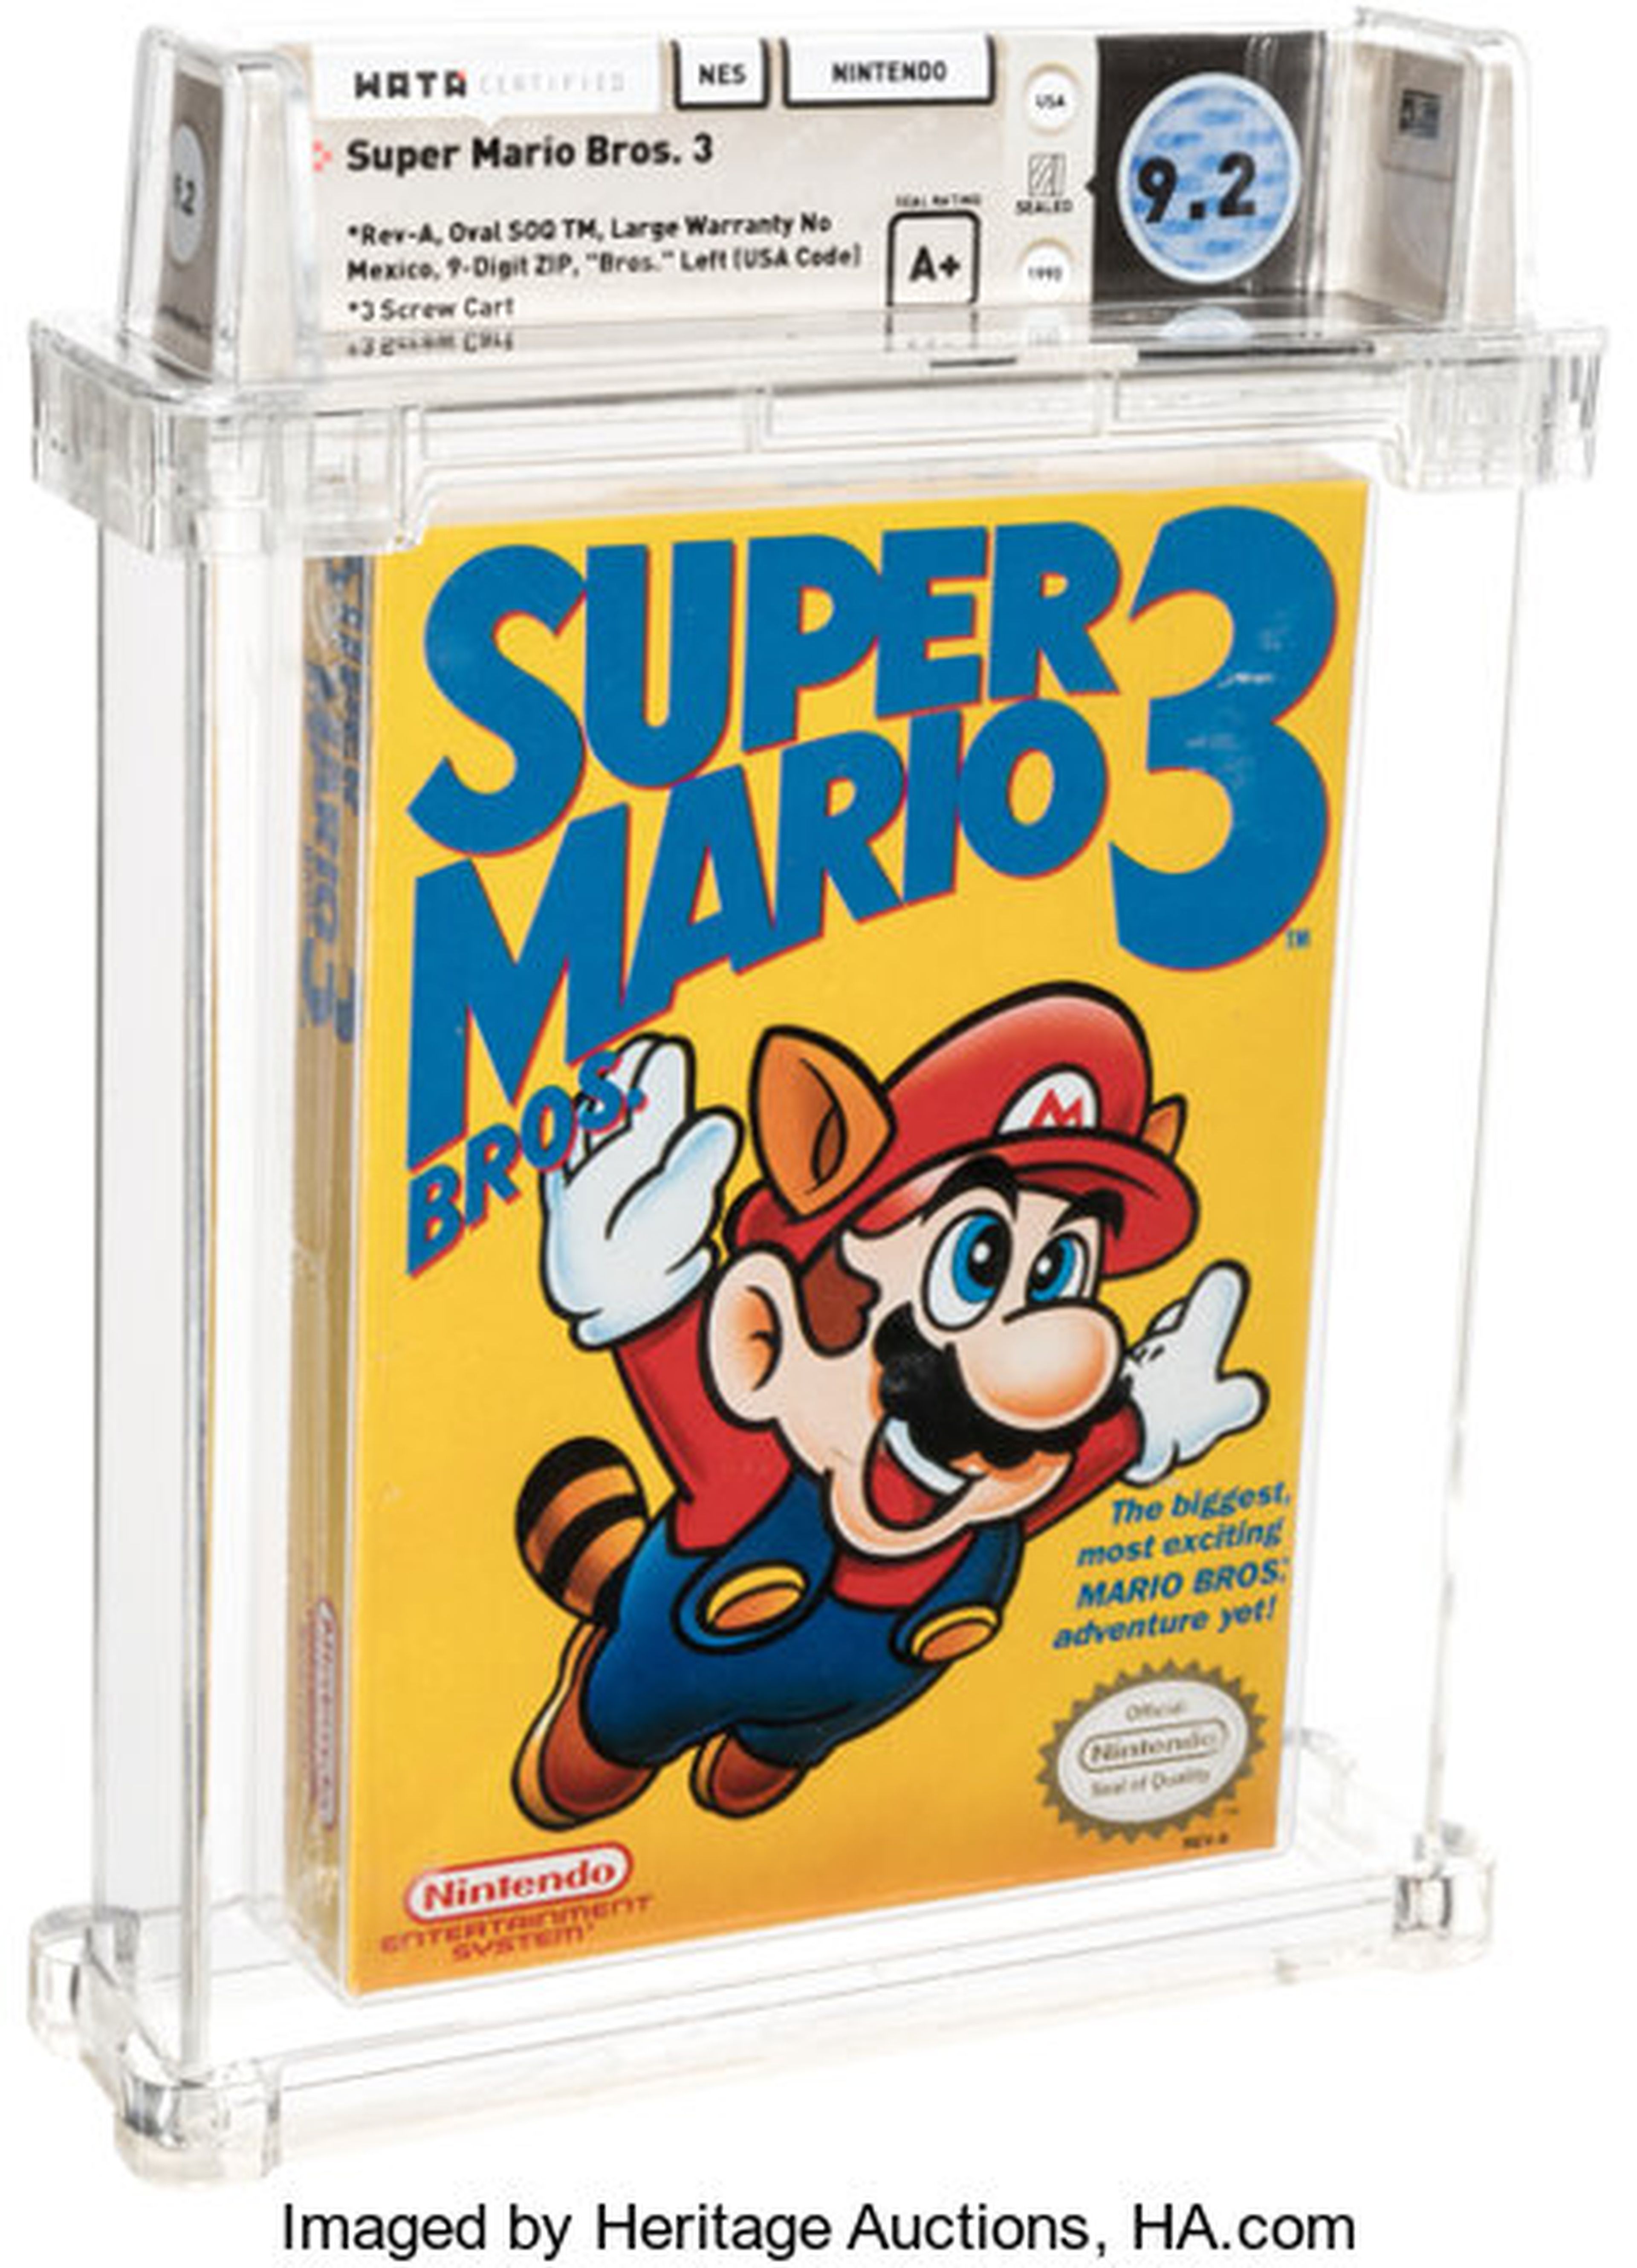 Super Mario Bros 3 subastado.